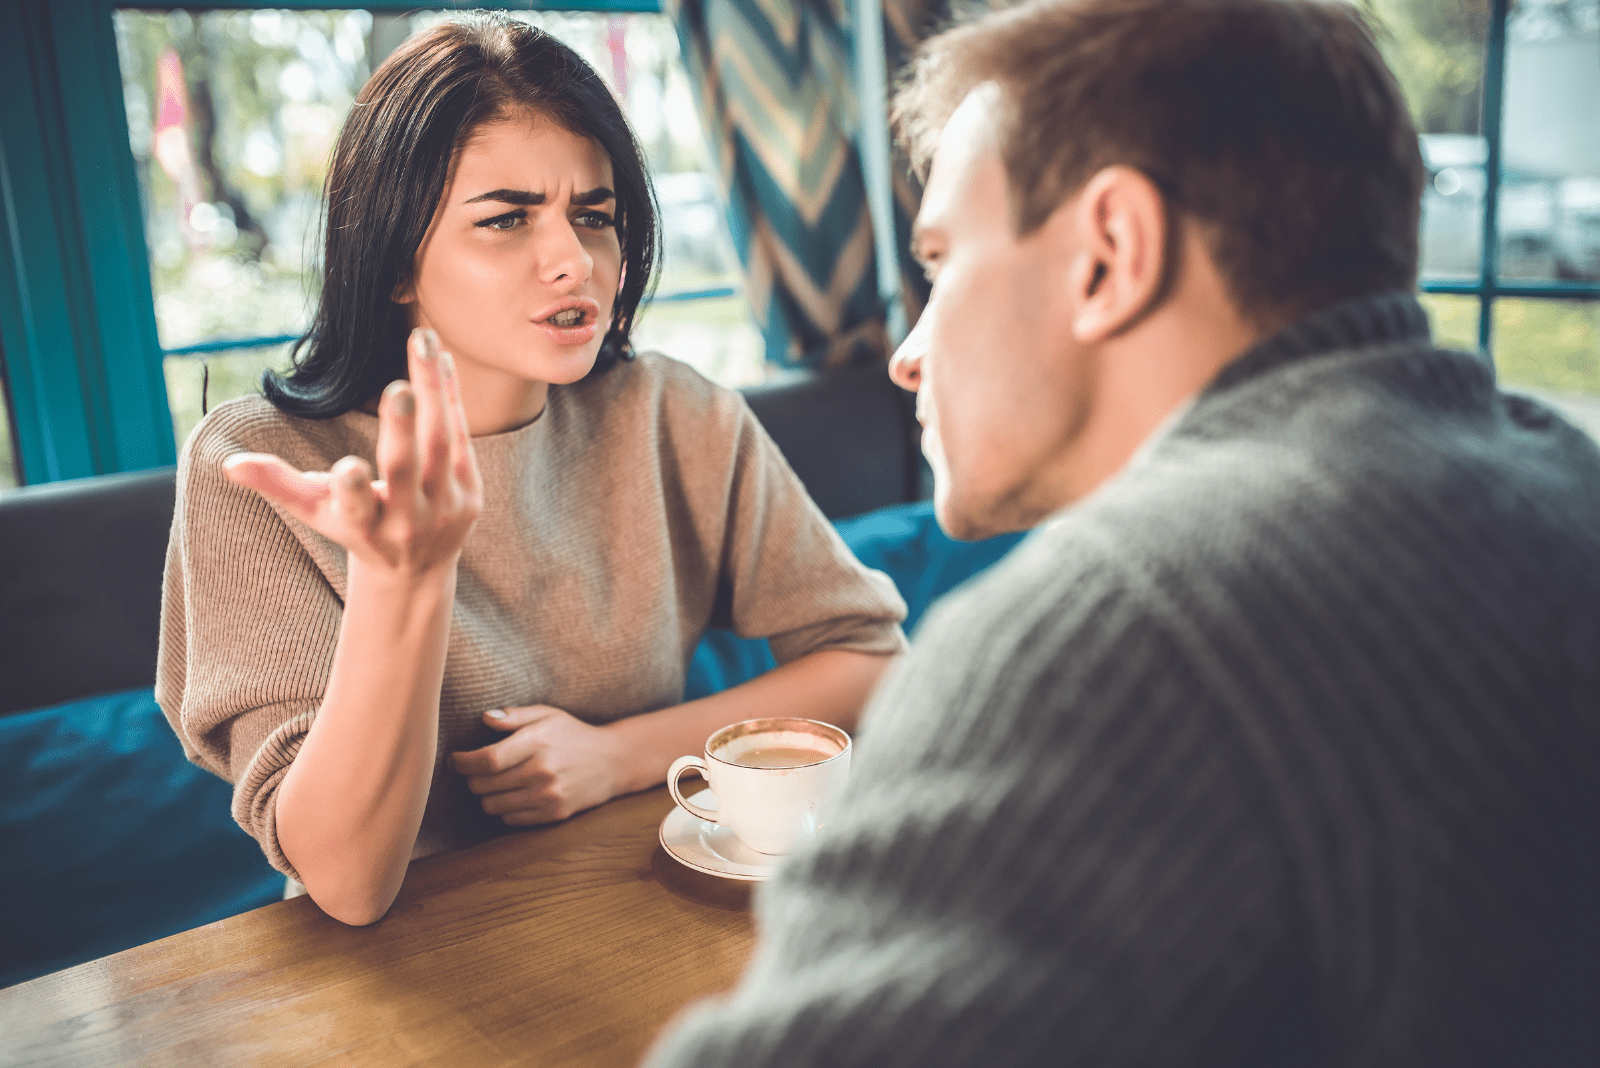 Eine enttäuschte Frau streitet mit einem Mann